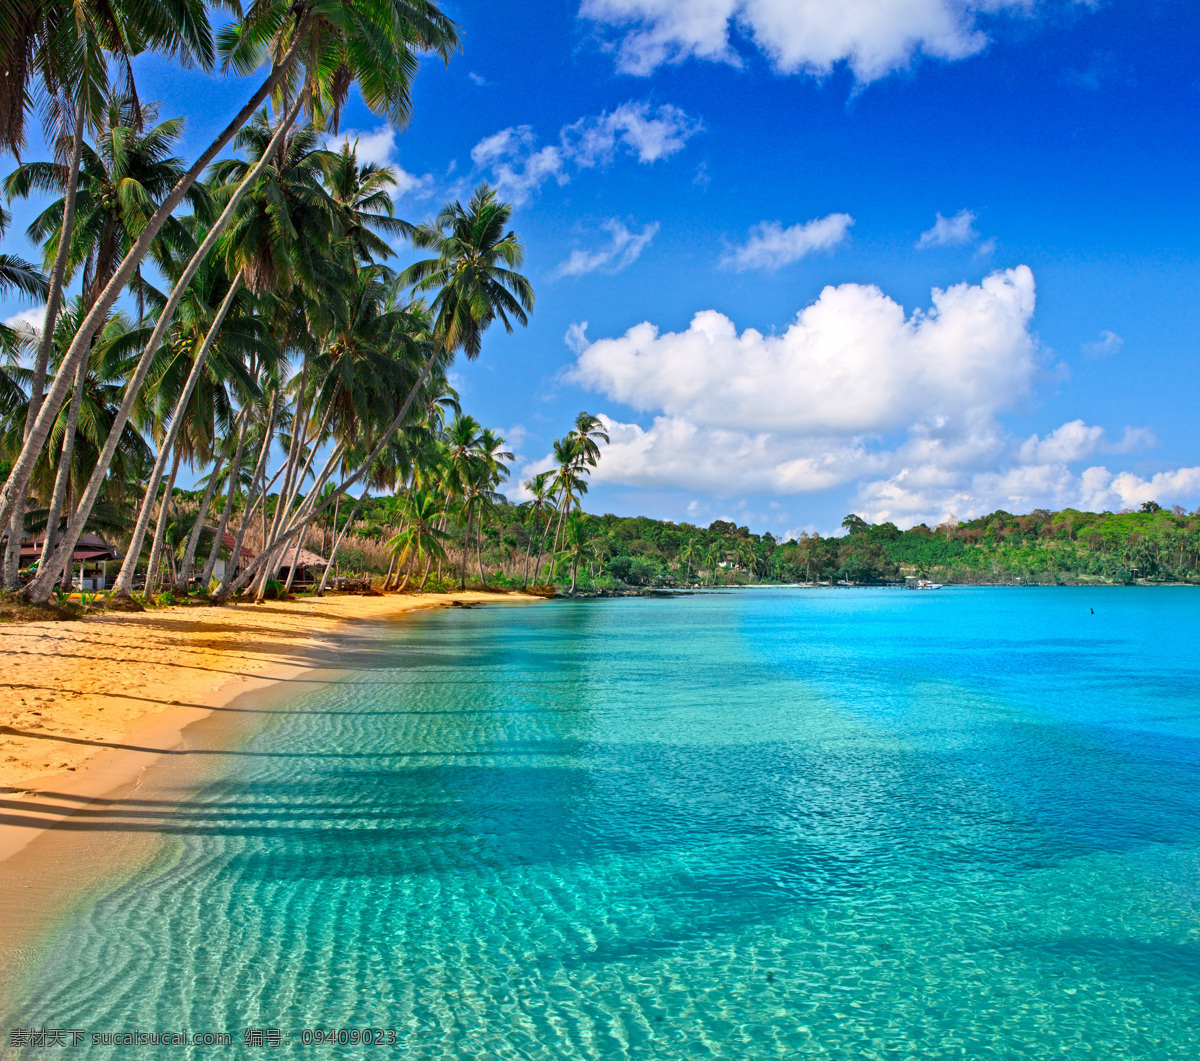 热带风光摄影 椰子树 天空 大海 海水 沙滩 休闲旅游 自然风光 景观 景区 自然风景 自然景观 青色 天蓝色